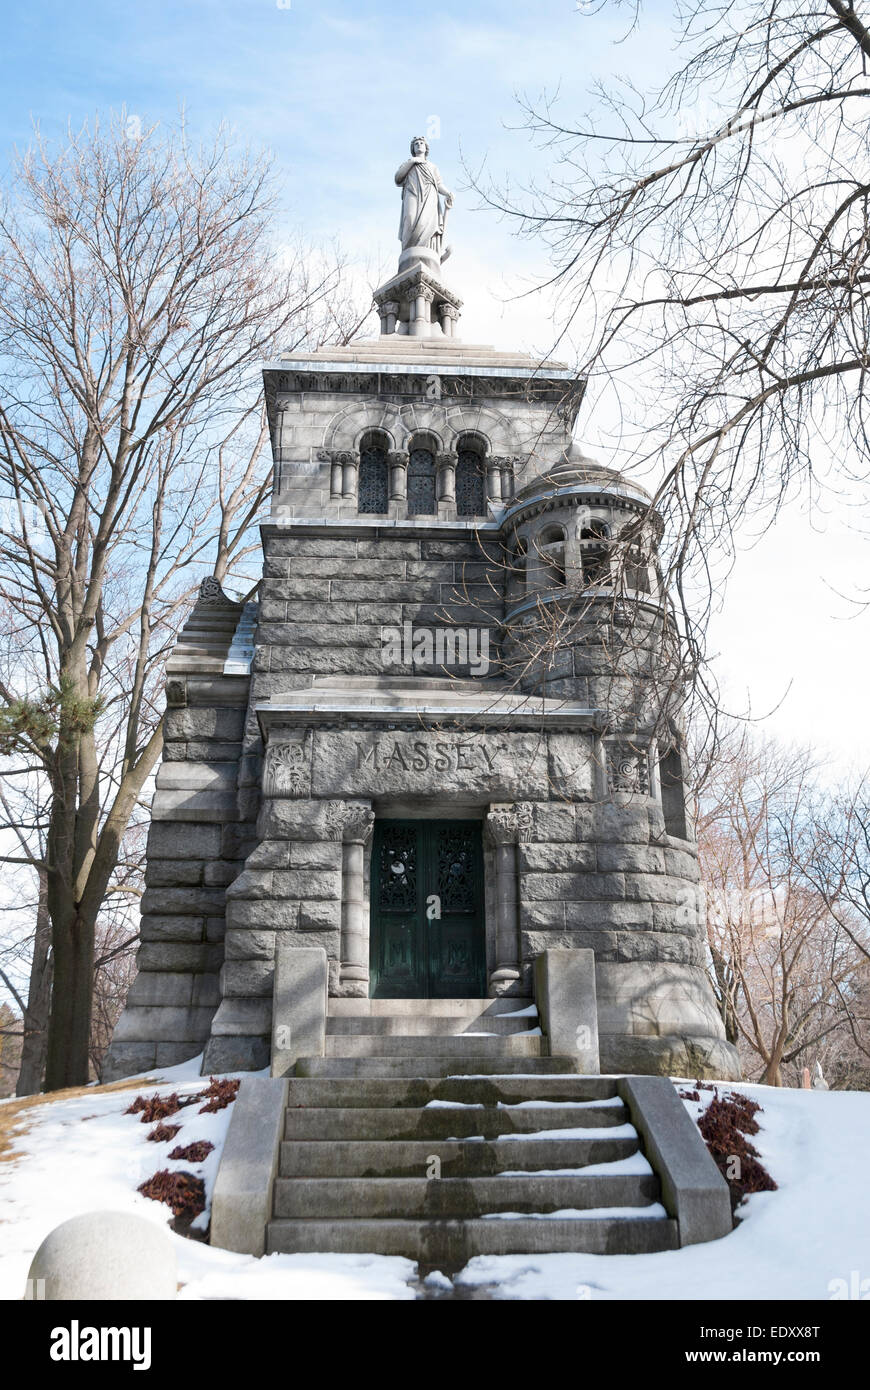 Das romanische Revival Stil Mausoleum Kanadas bekannten Massey Familie befindet sich in Toronto Mount Pleasant Cemetery Stockfoto